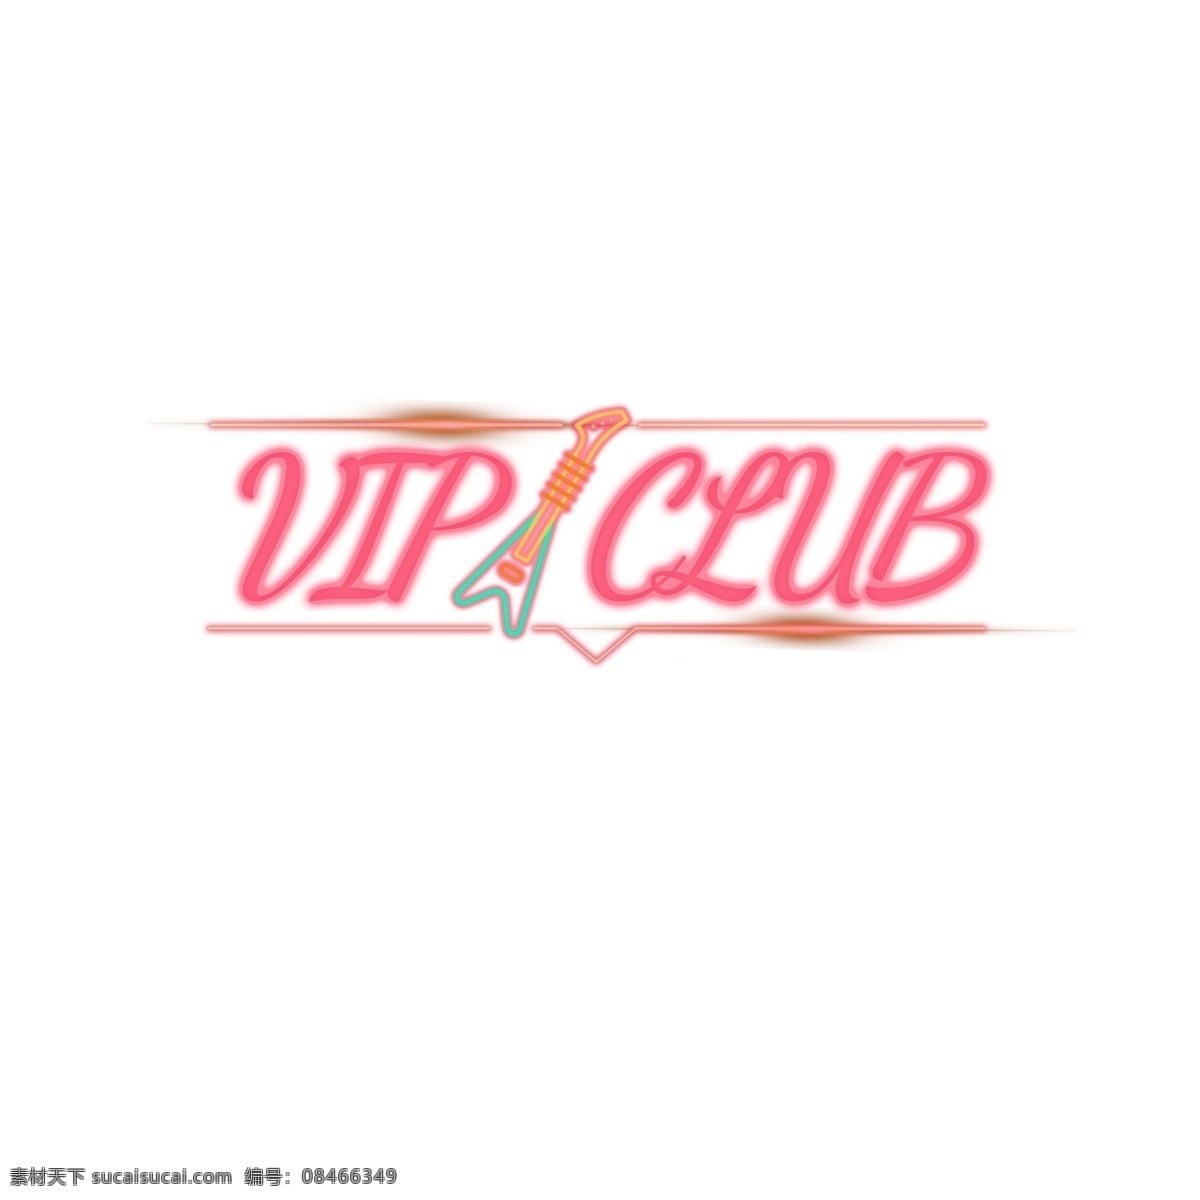 酷 vip 俱乐部 抽象 字体 贵宾俱乐部 粉 吉他 帧 背景 抽象字体 书法